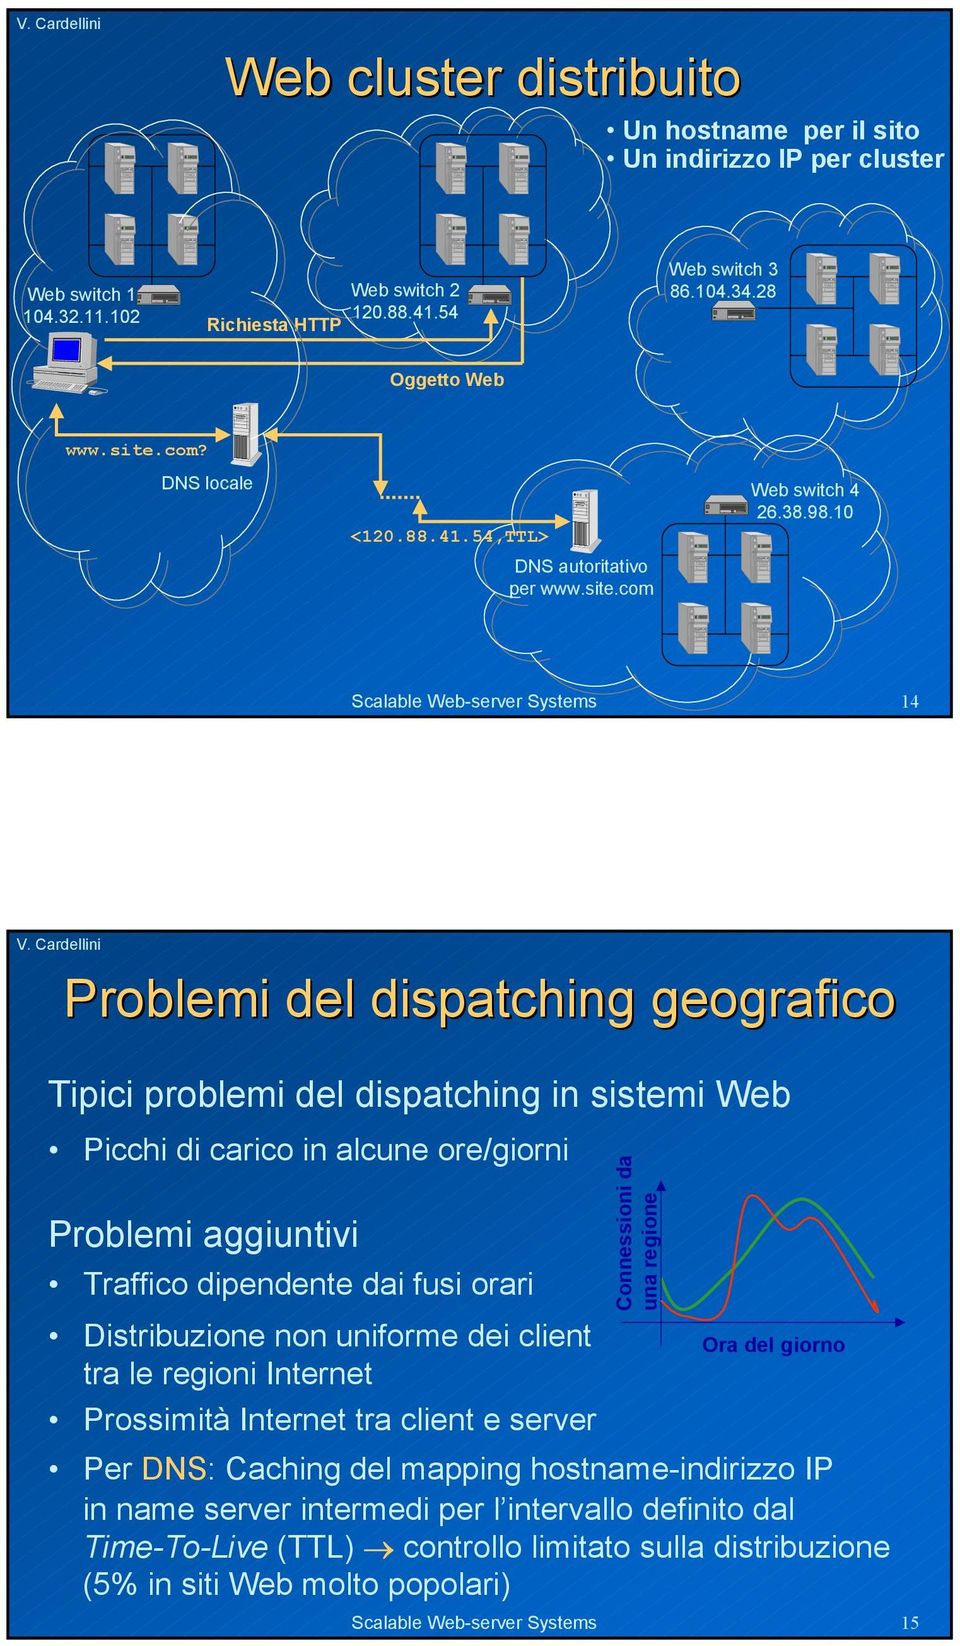 1 Scalable Web-server Systems 14 Problemi del dispatching geografico Tipici problemi del dispatching in sistemi Web Picchi di carico in alcune ore/giorni Problemi aggiuntivi Traffico dipendente dai